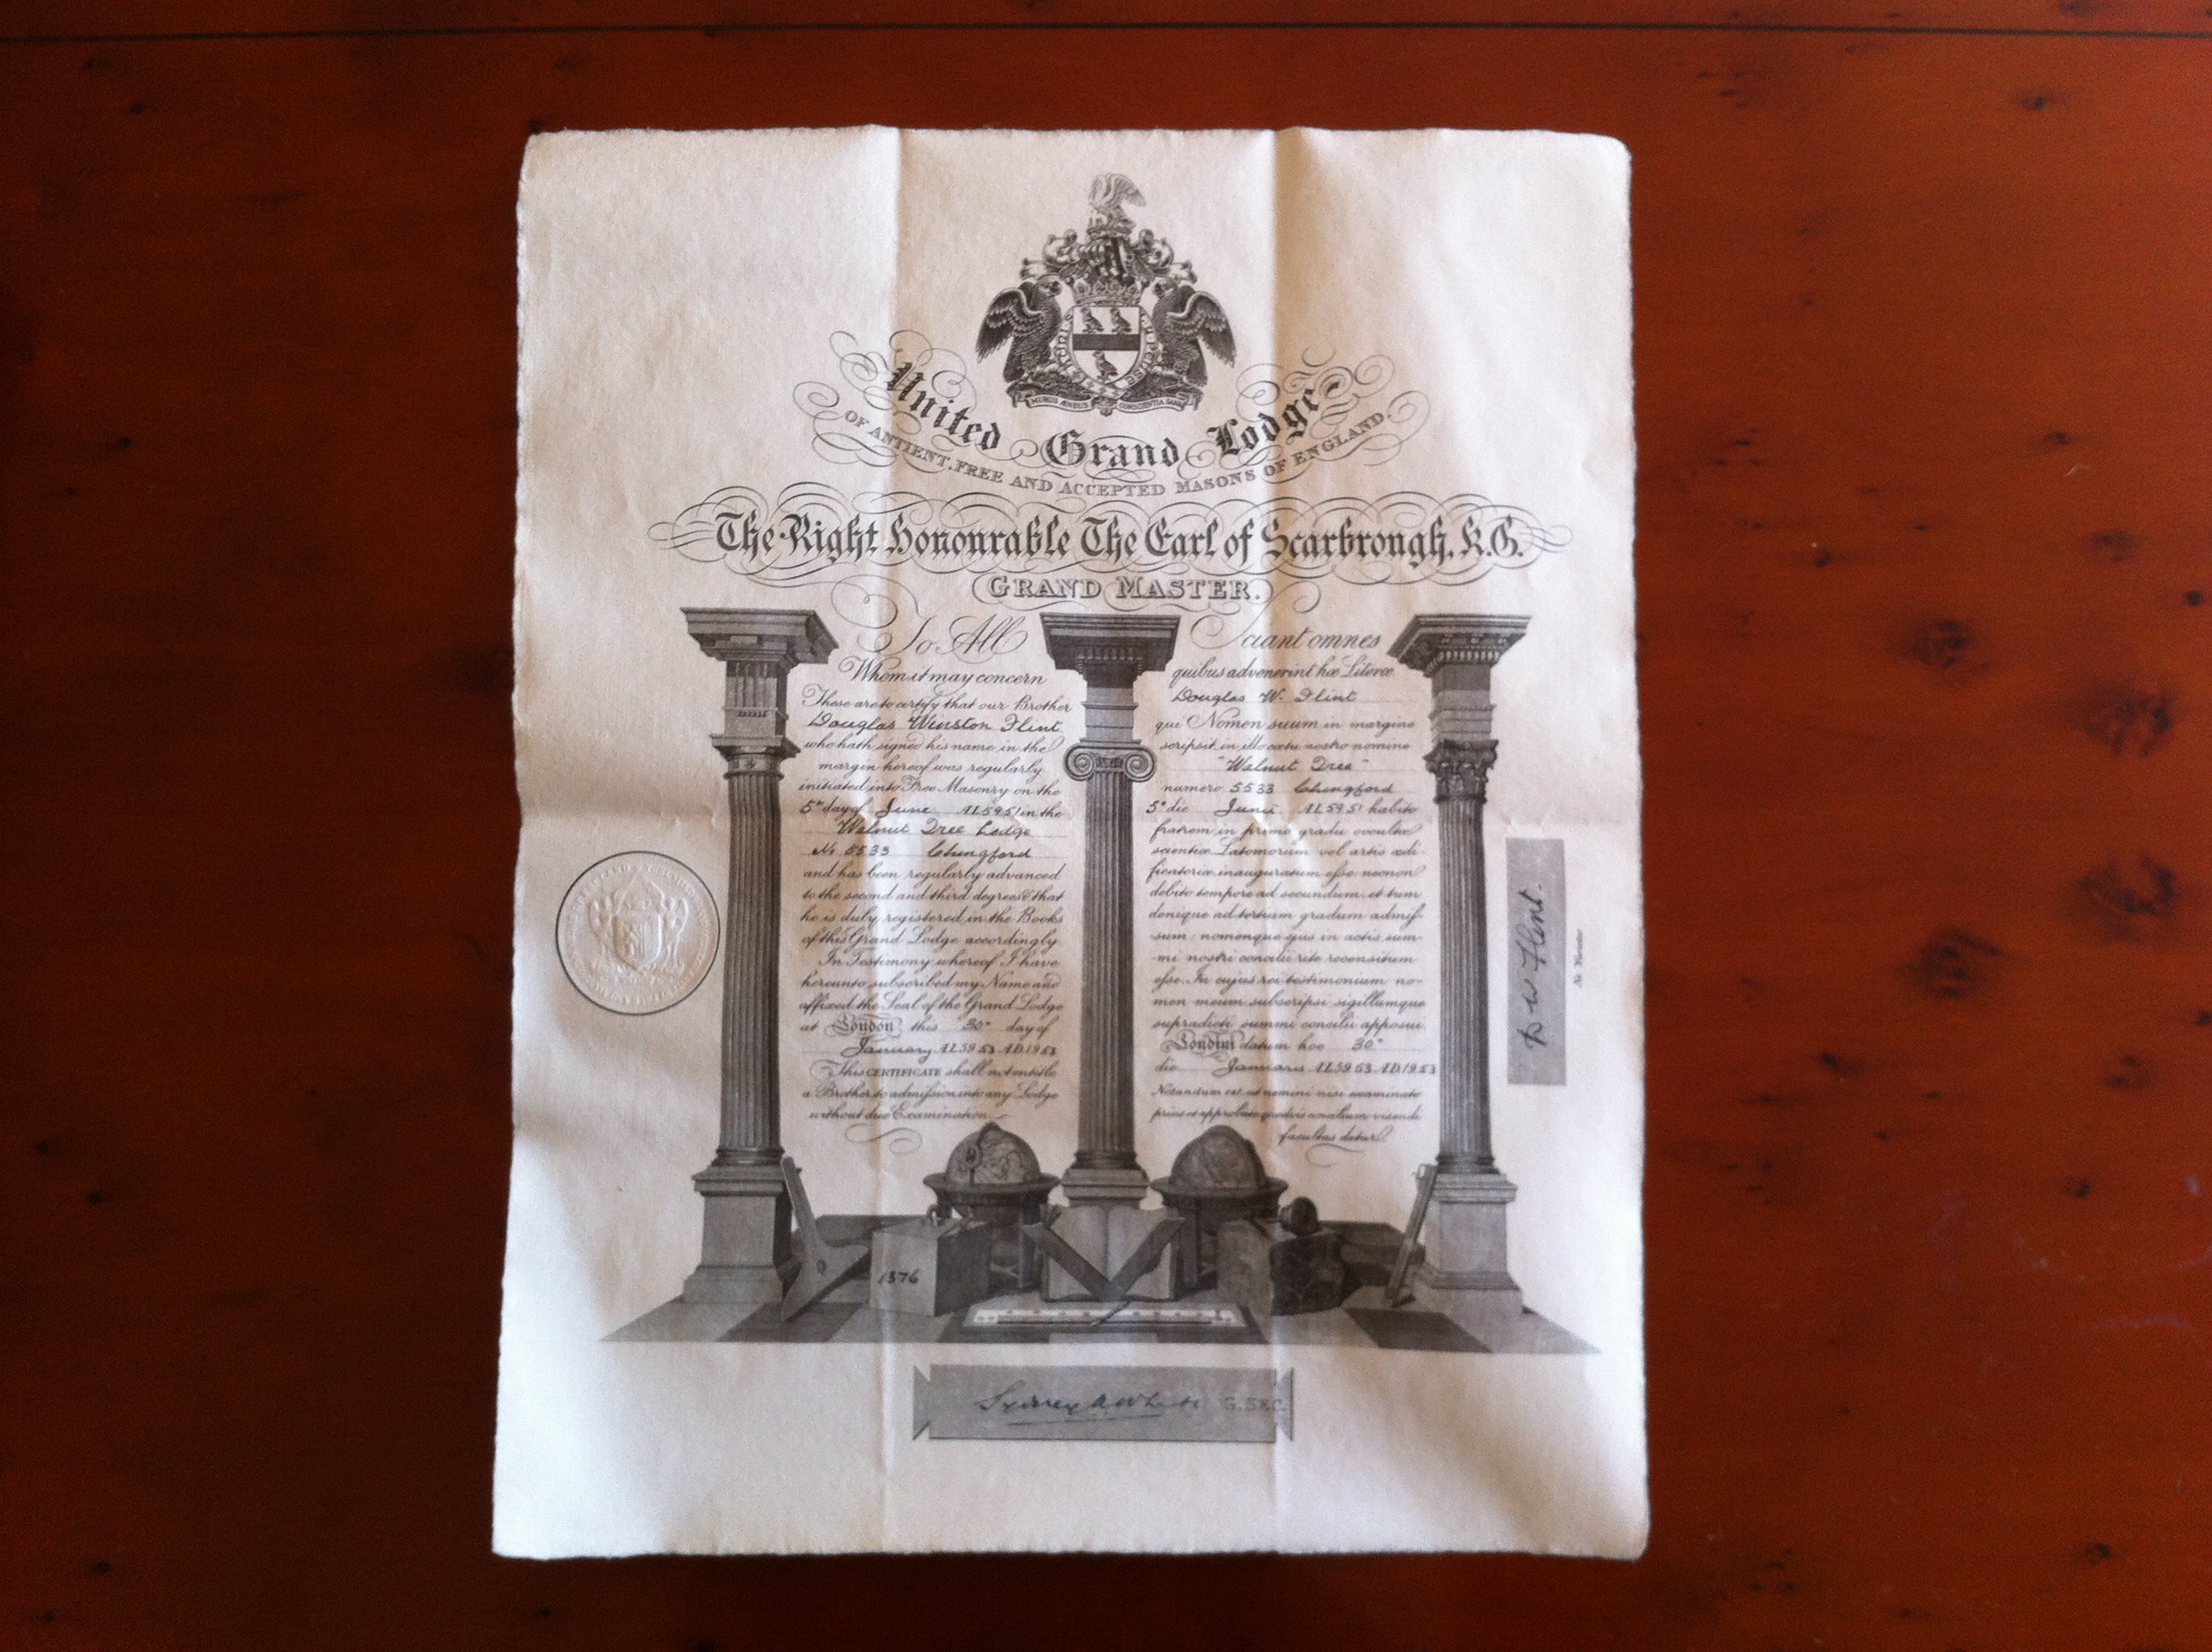 United Grand Lodge Certificate